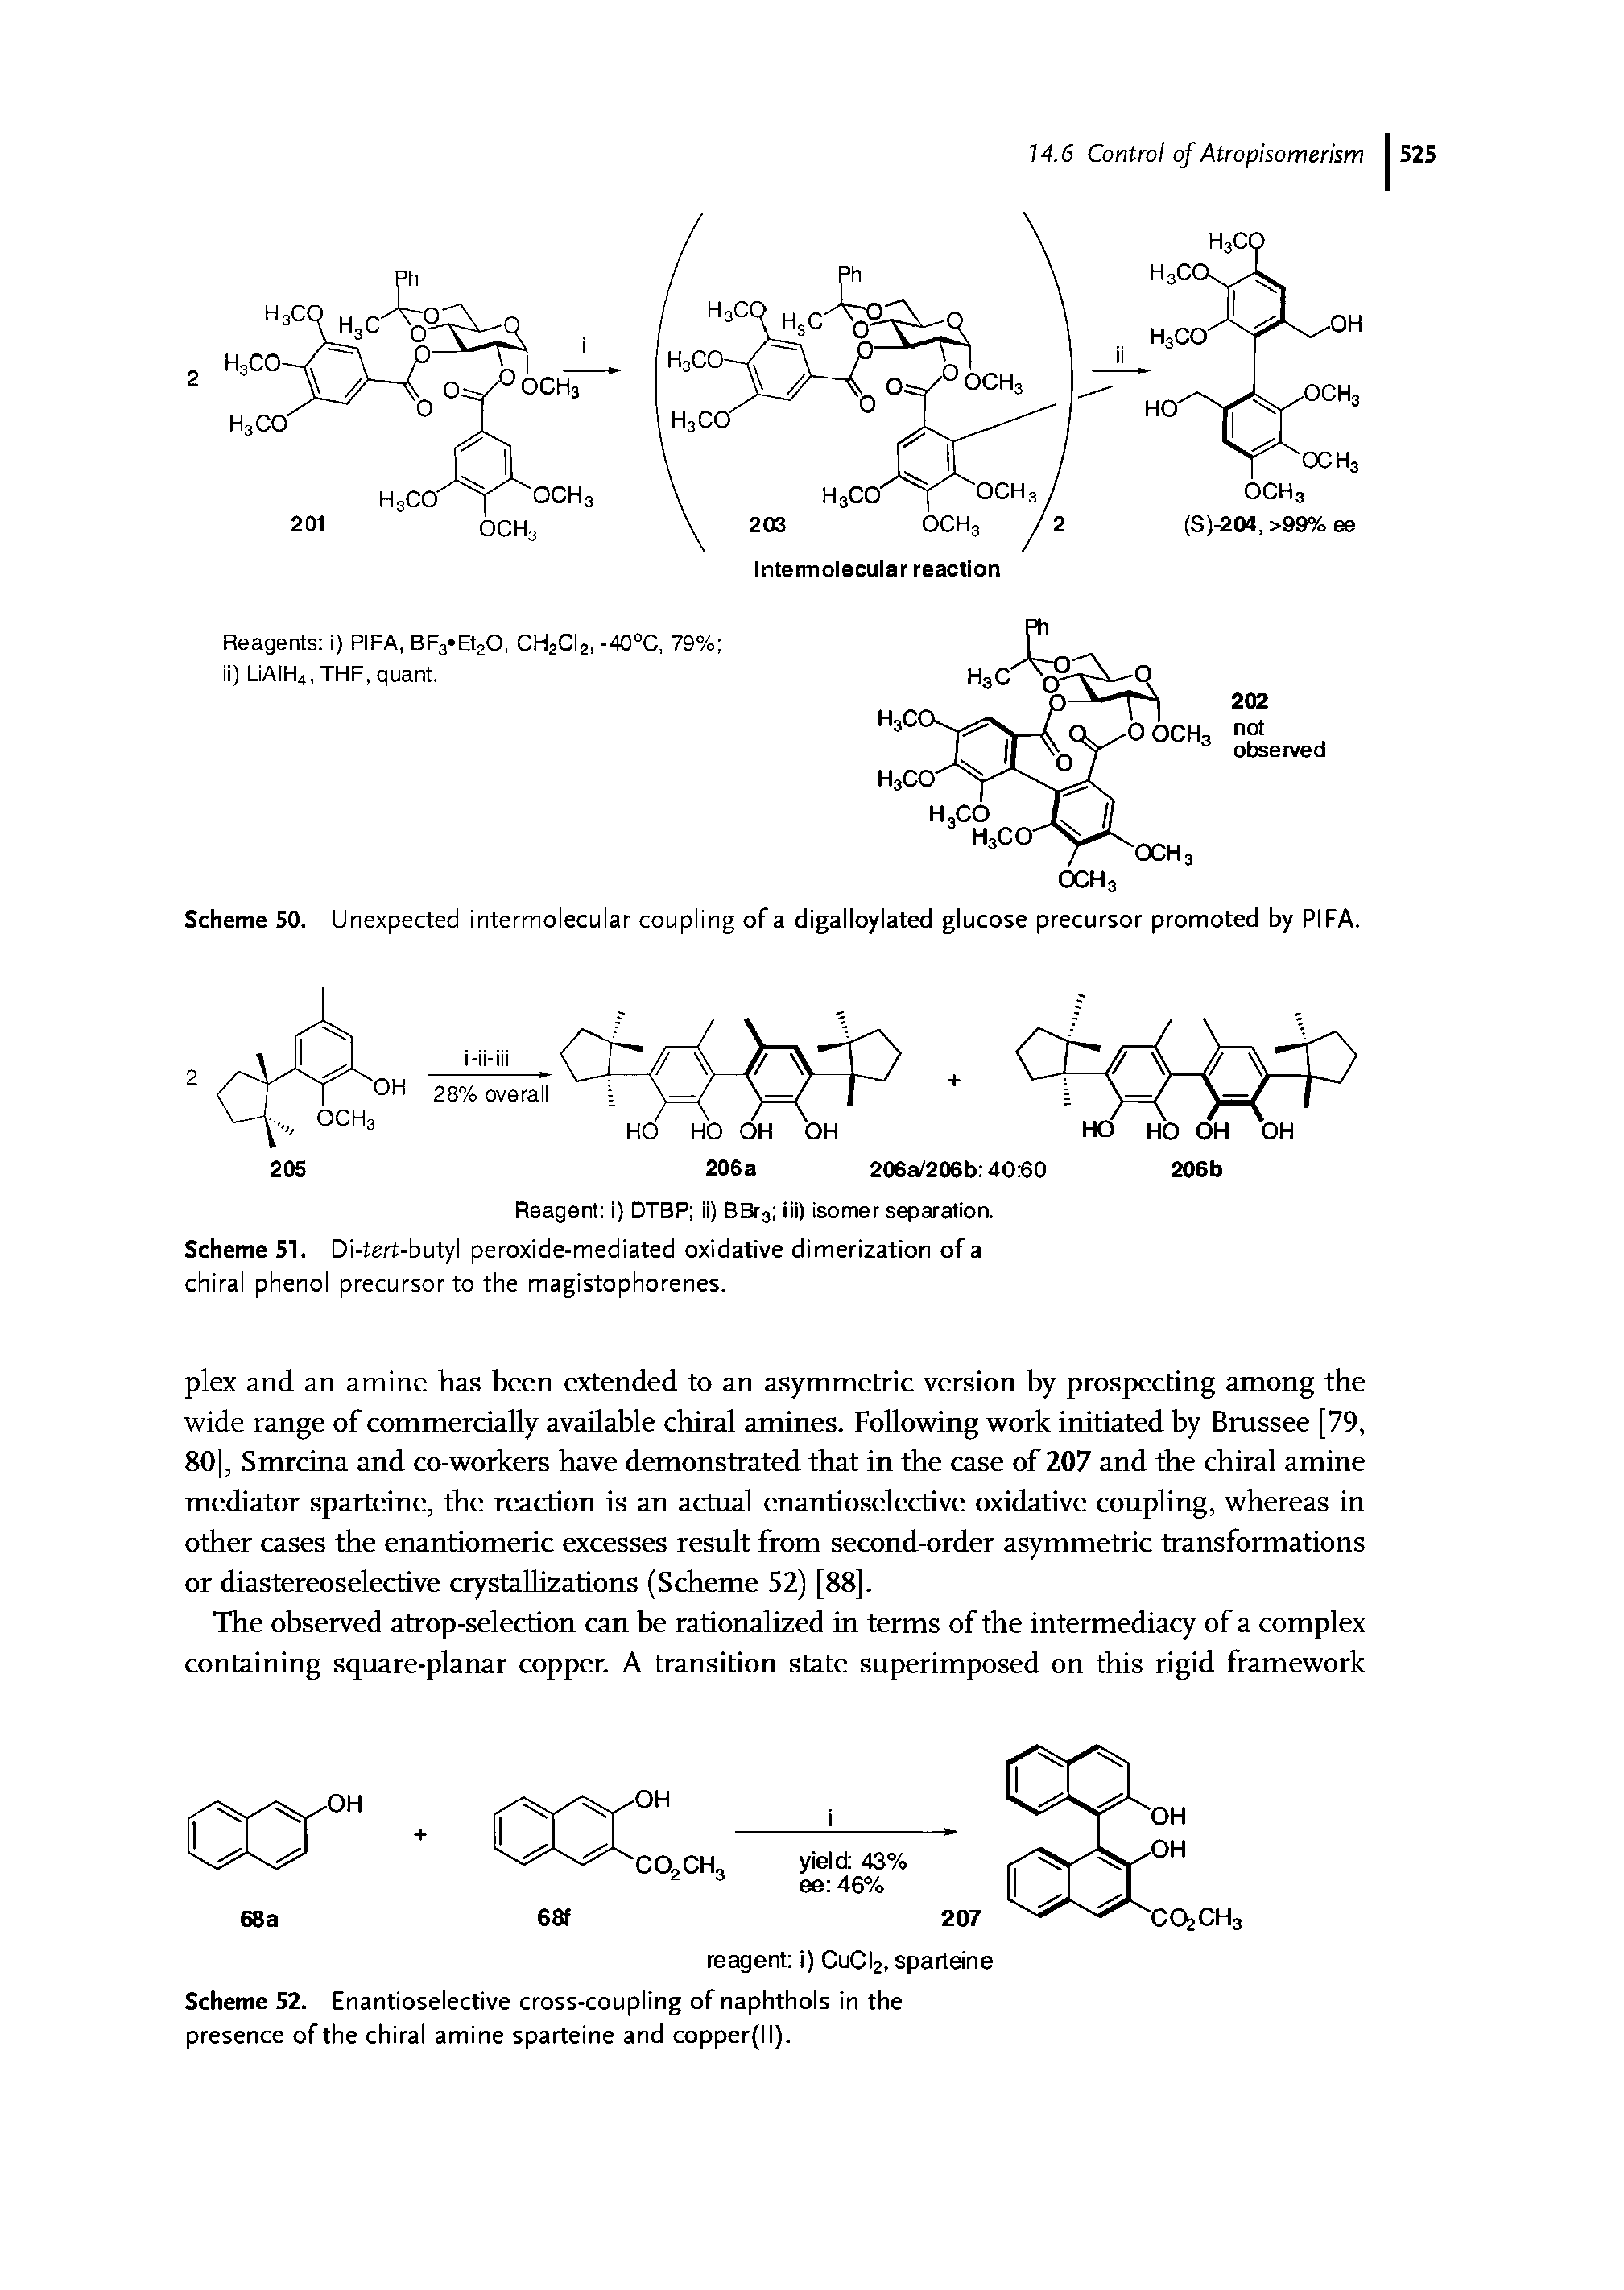 Scheme 51. Di-tert-butyl peroxide-mediated oxidative dimerization of a chiral phenol precursor to the magistophorenes.